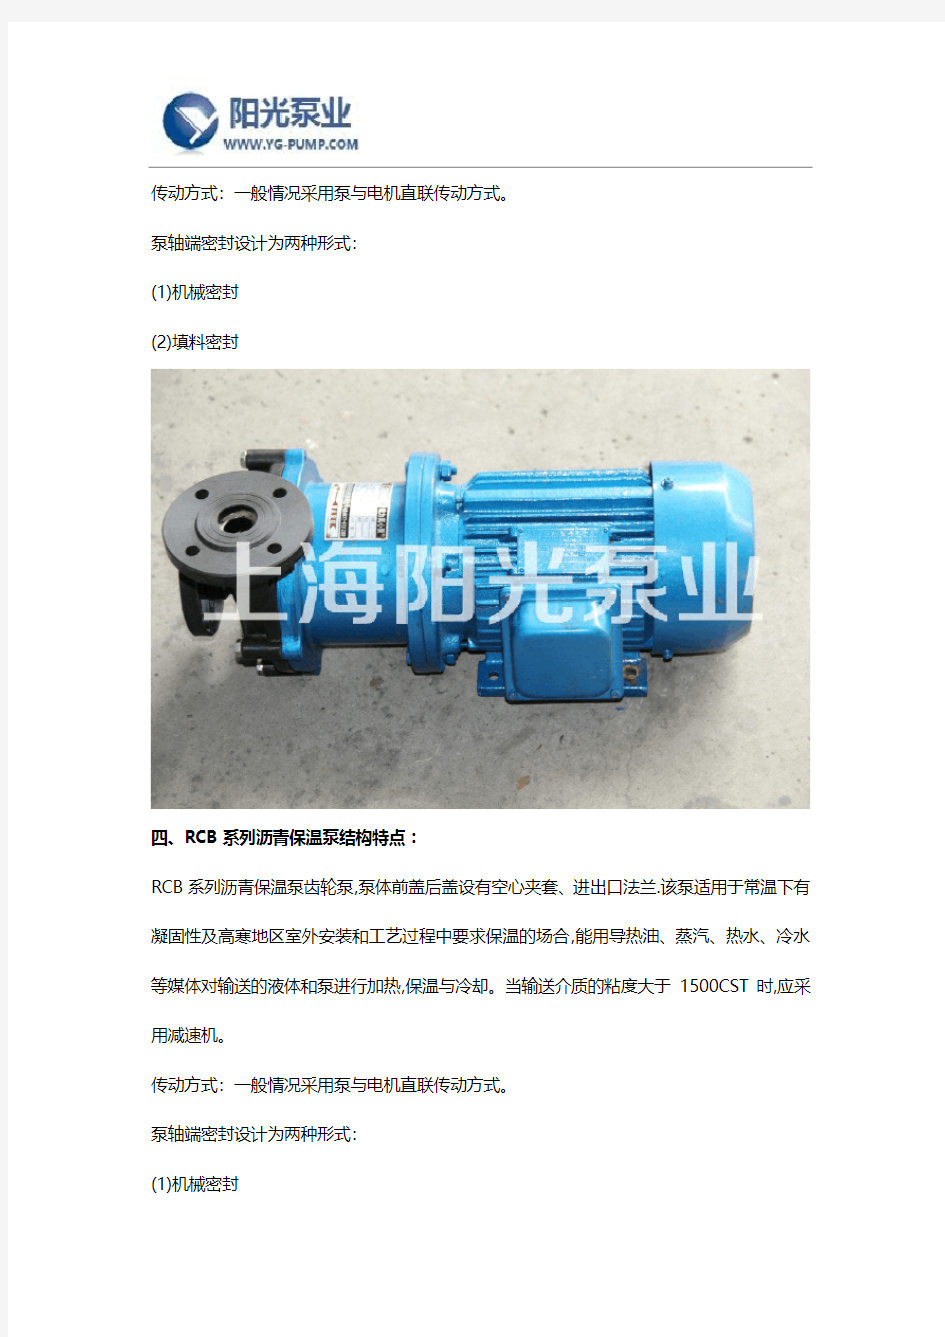 RCB柱塞泵厂家产品概述及用途